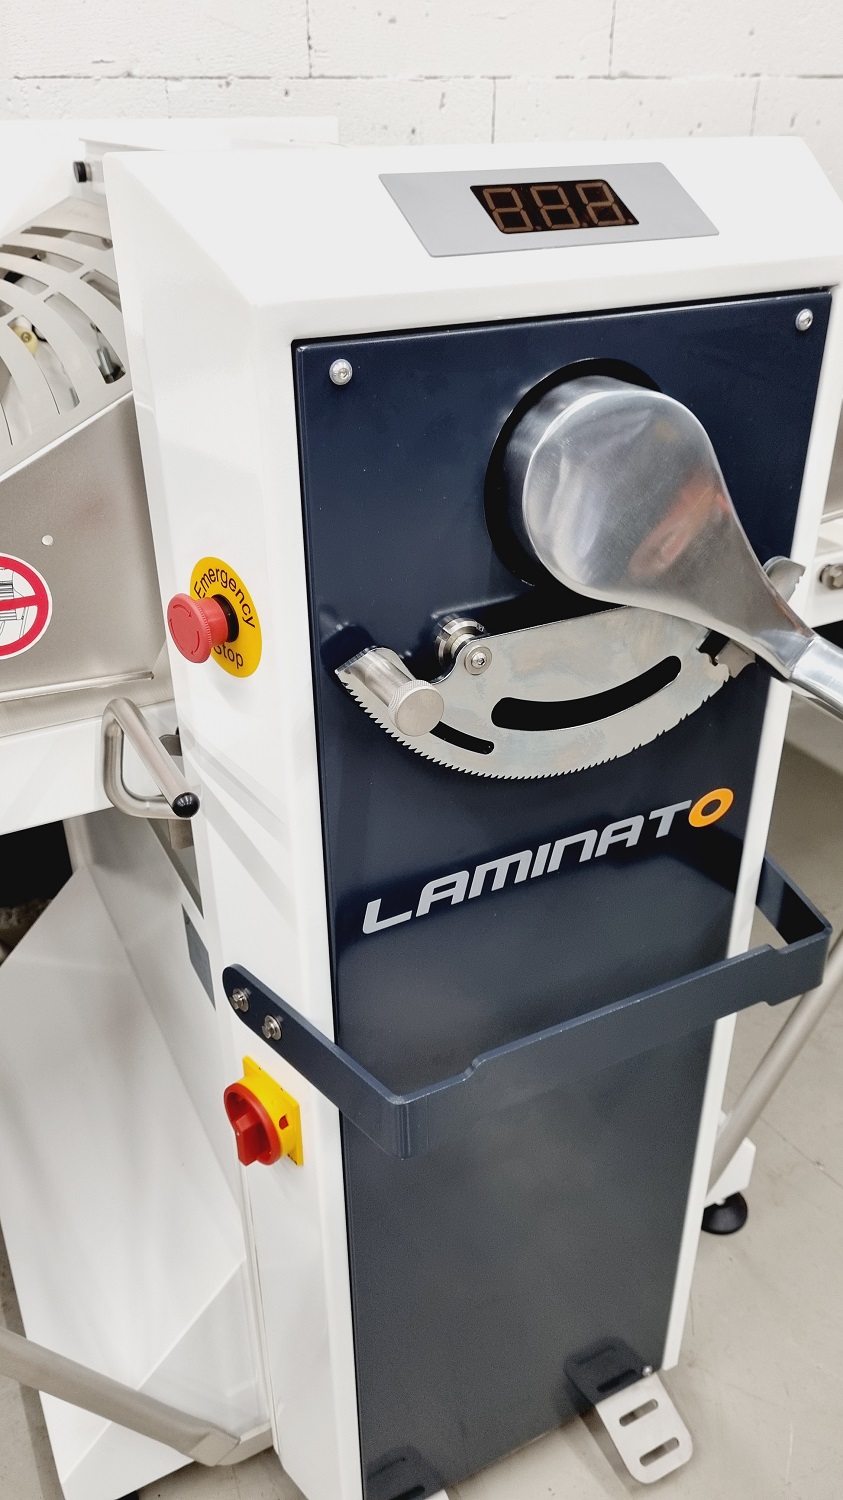 Ausrollmaschine Laminato 650